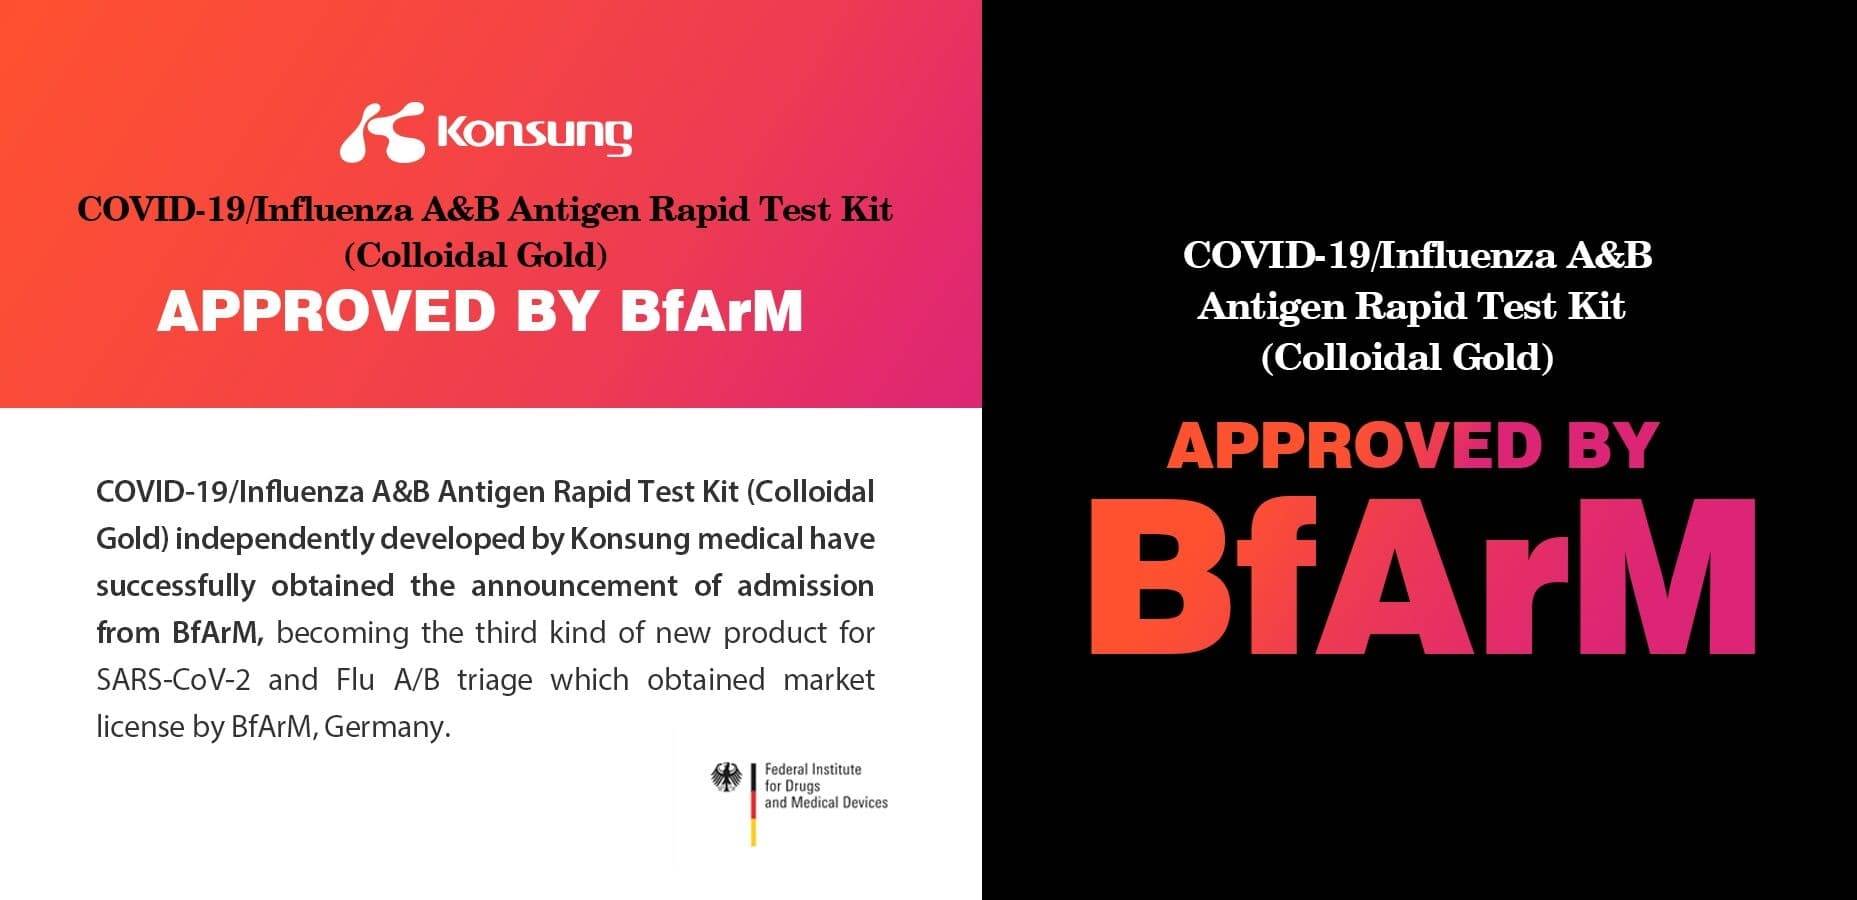 Kîtên testê yên Konsung COVID-19/Influenza A & B-Antigen ragihandina pejirandinê ji BfArm wergirt.